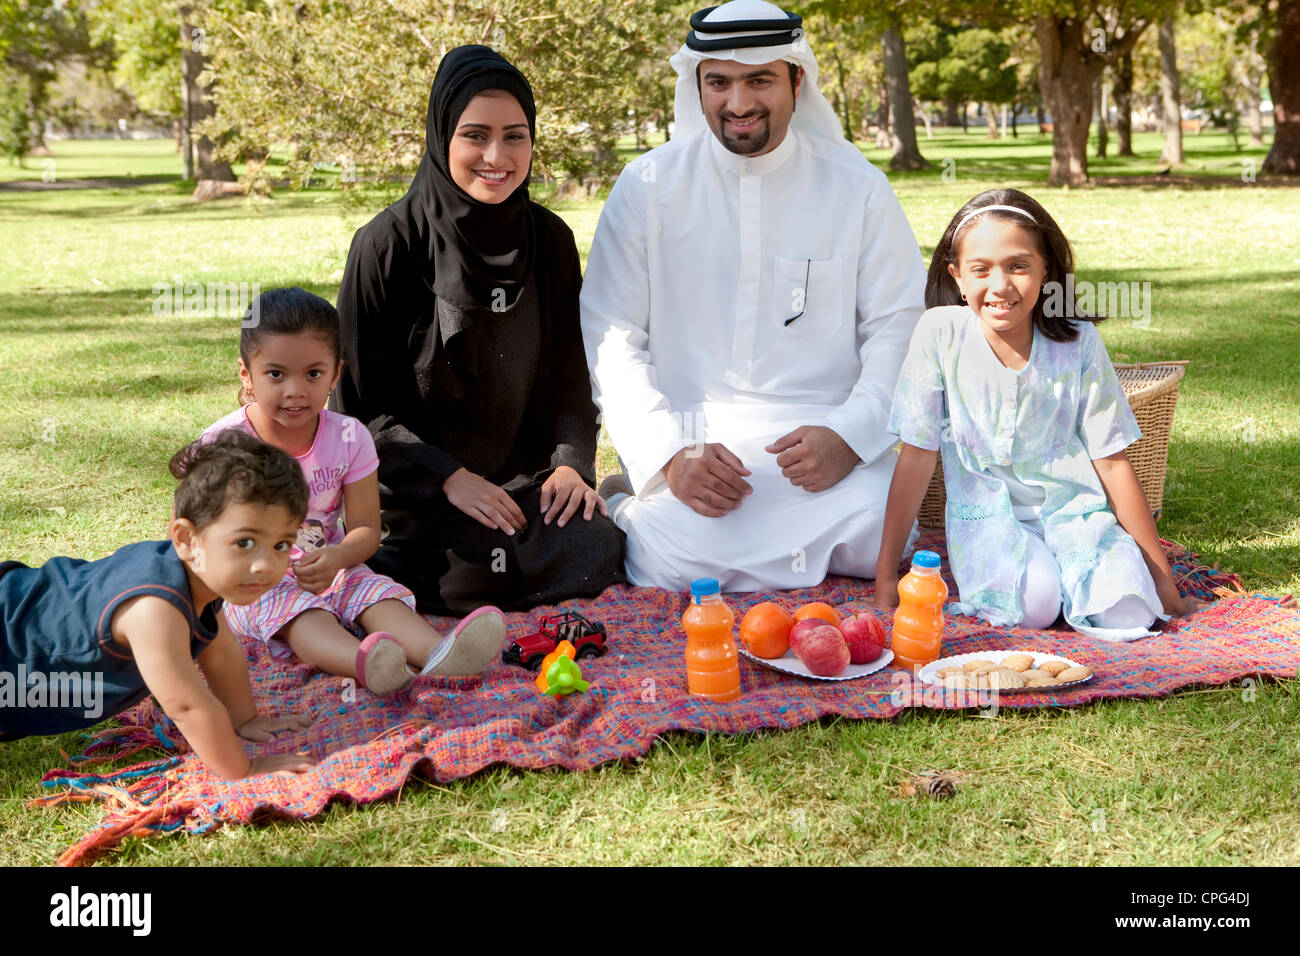 portrait-of-arab-family-picnic-in-the-park-CPG4DJ.jpg